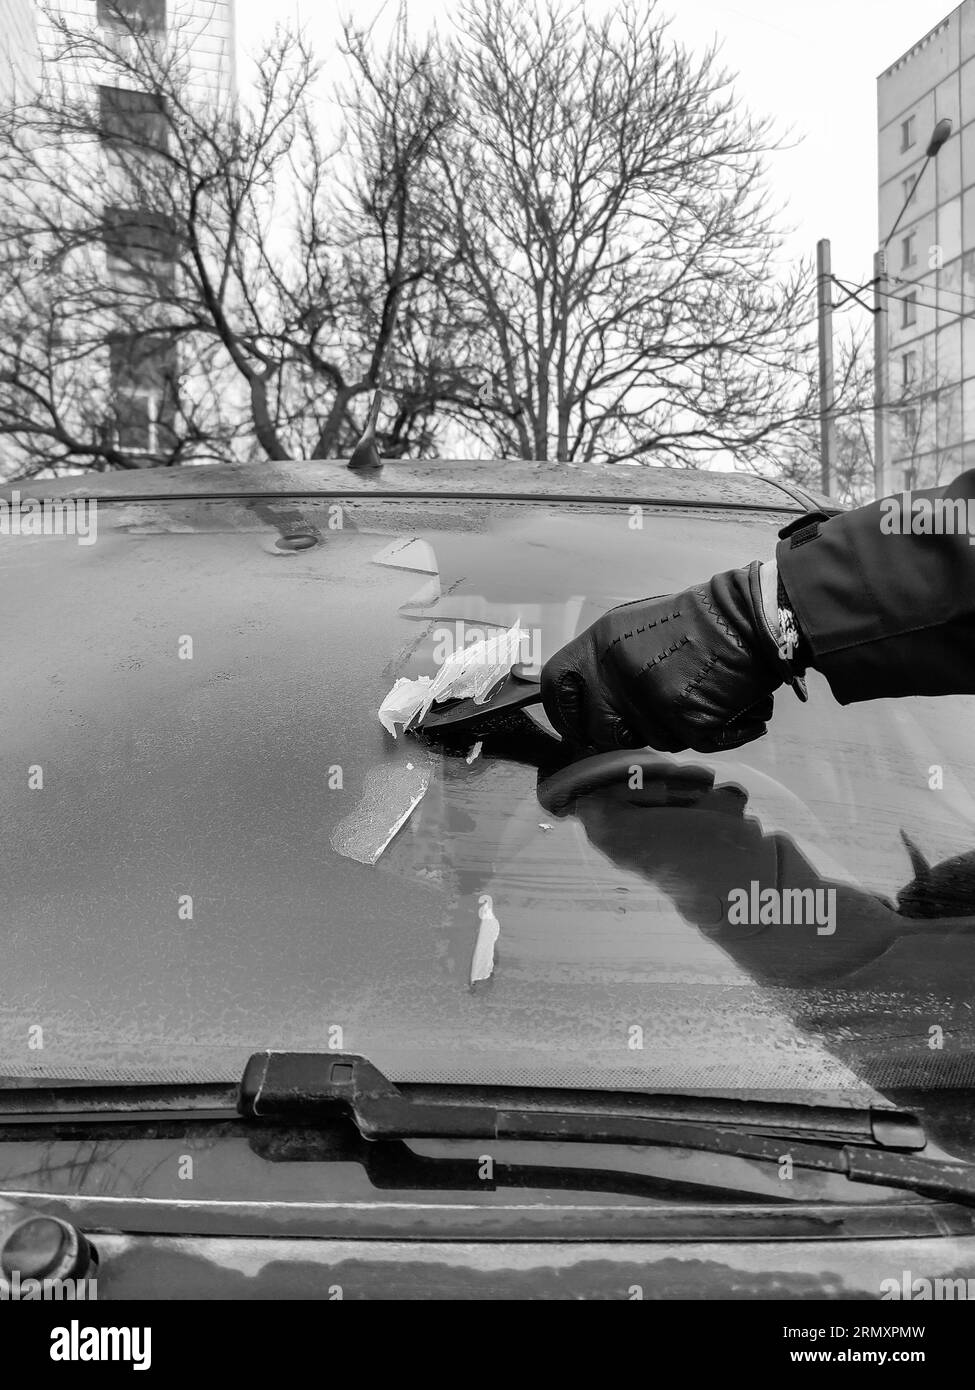 Nettoyage des vitres de voiture en hiver. L'homme gratte le cerceau avec un grattoir en plastique du pare-brise d'une voiture. Main dans un gant en cuir noir dans le froid. Banque D'Images